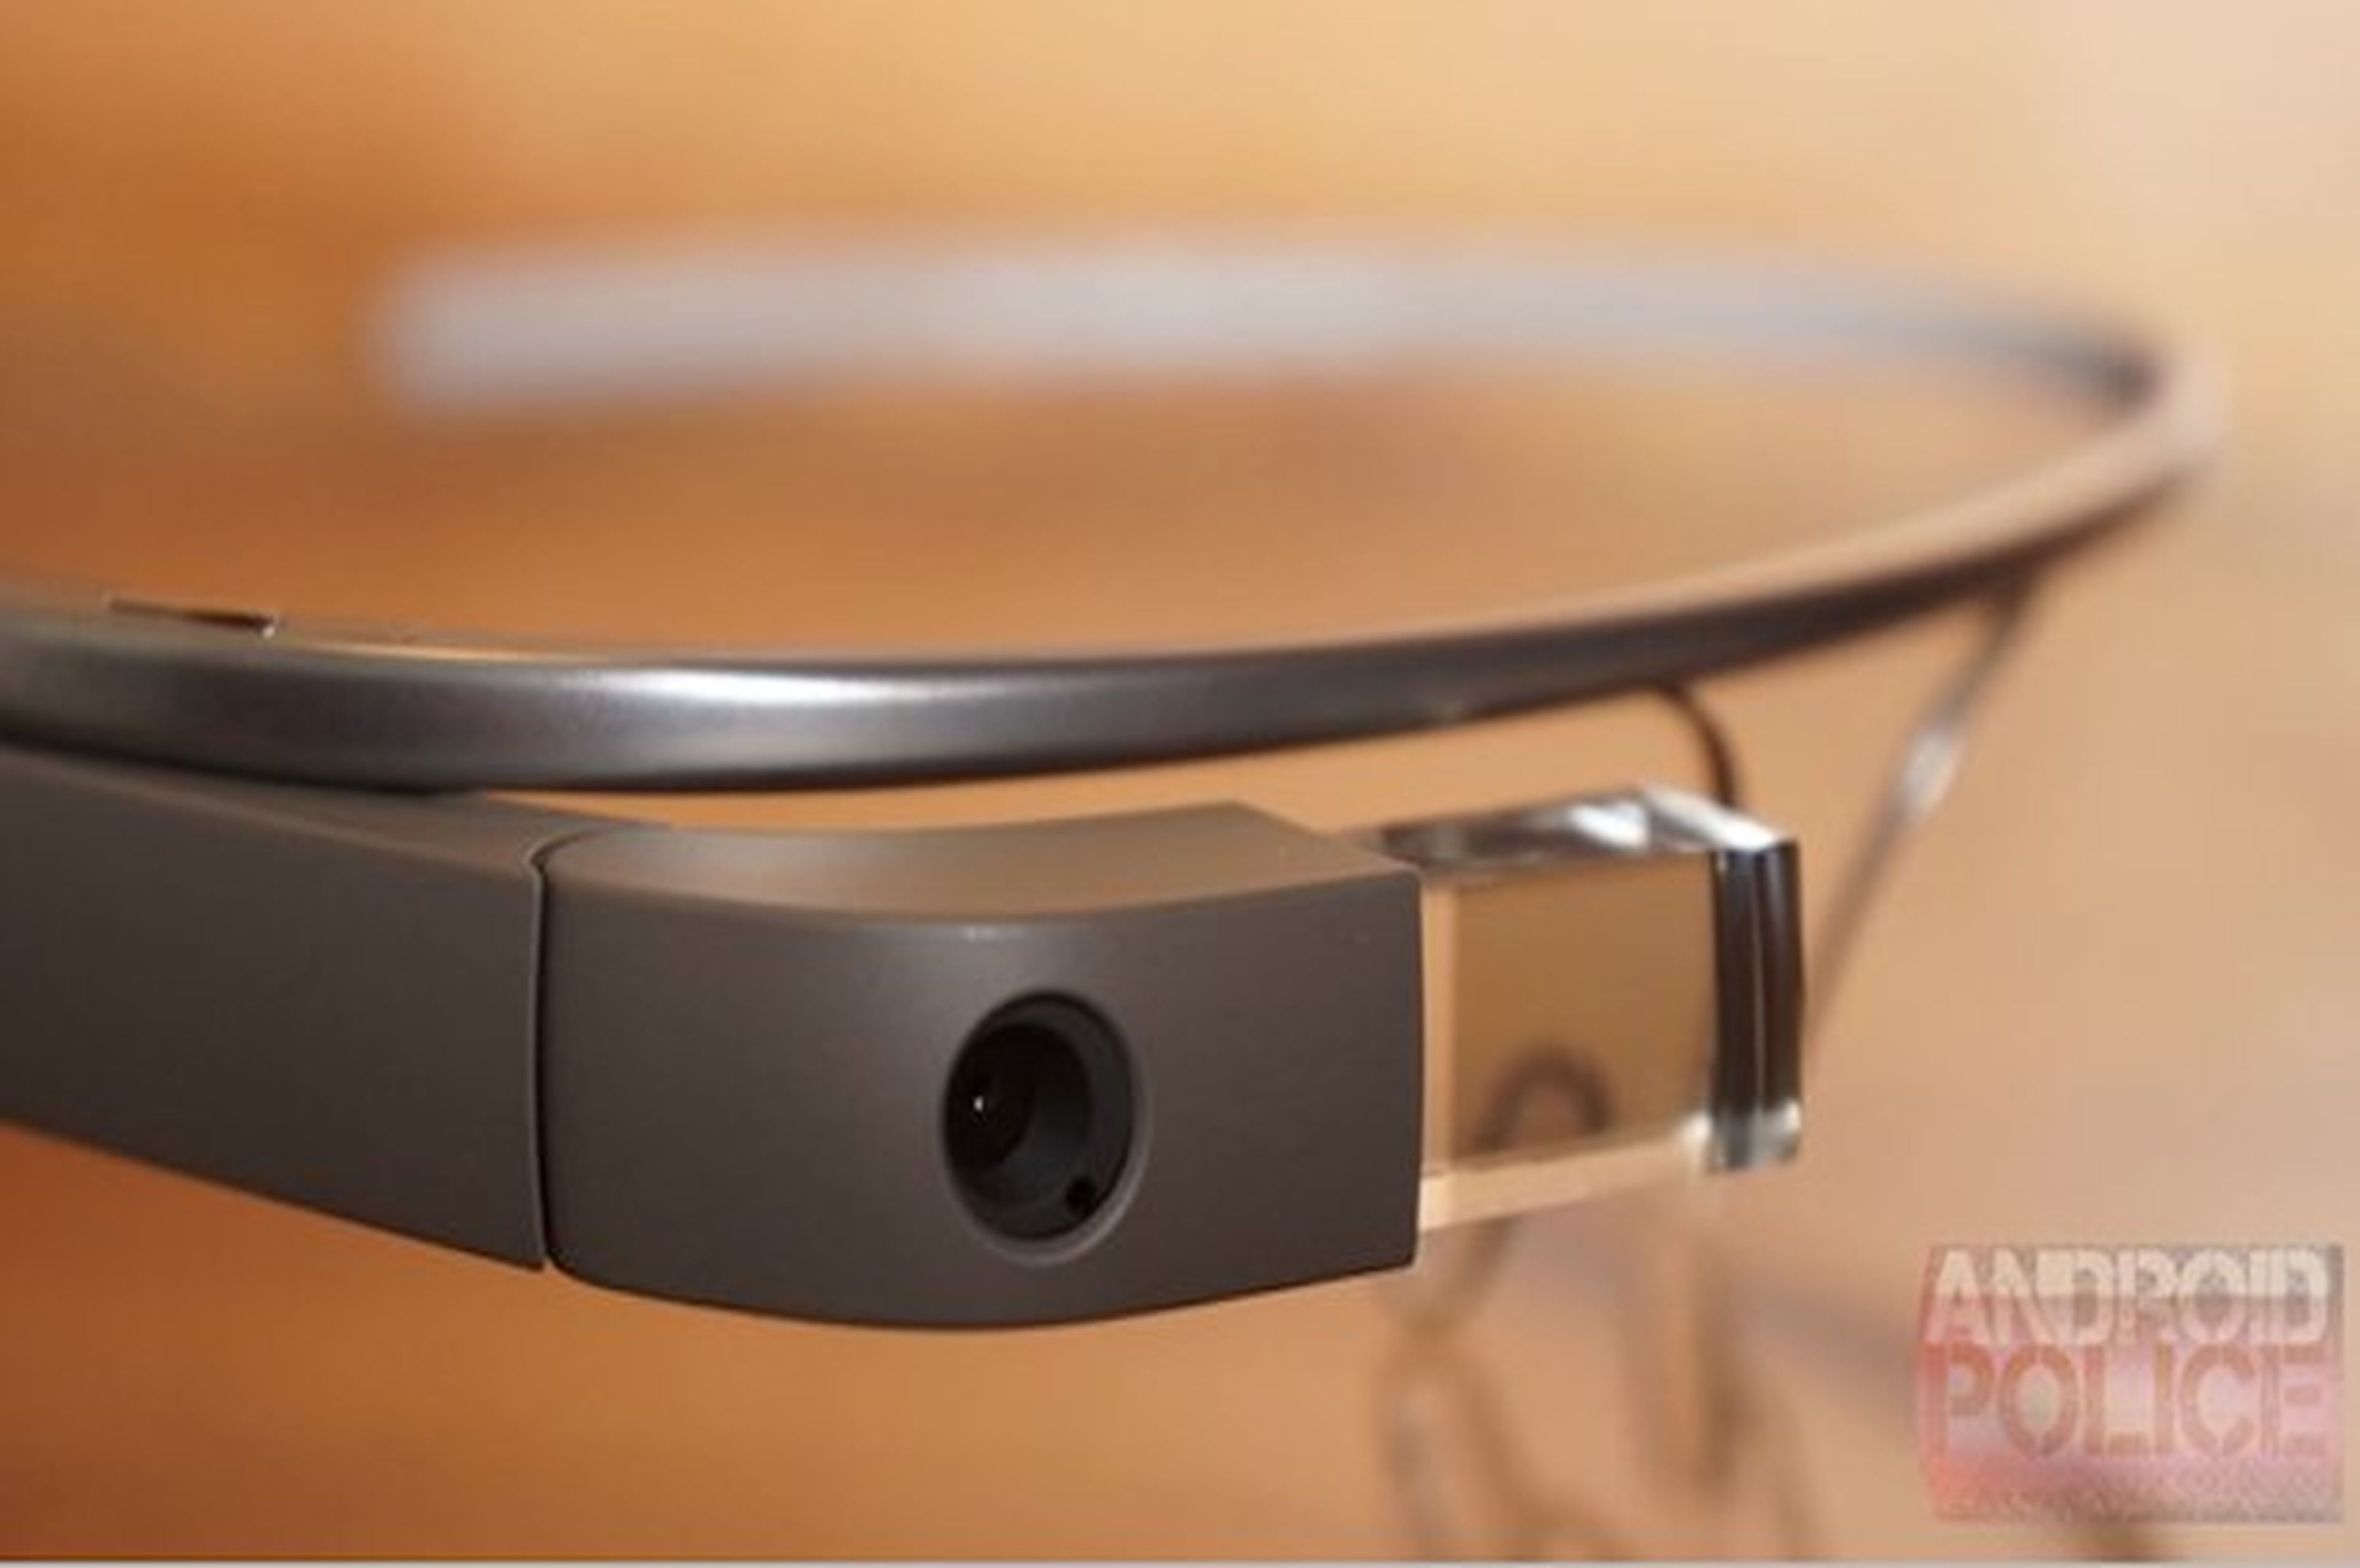 Google Glass podrían capturar imágenes con guiño del ojo